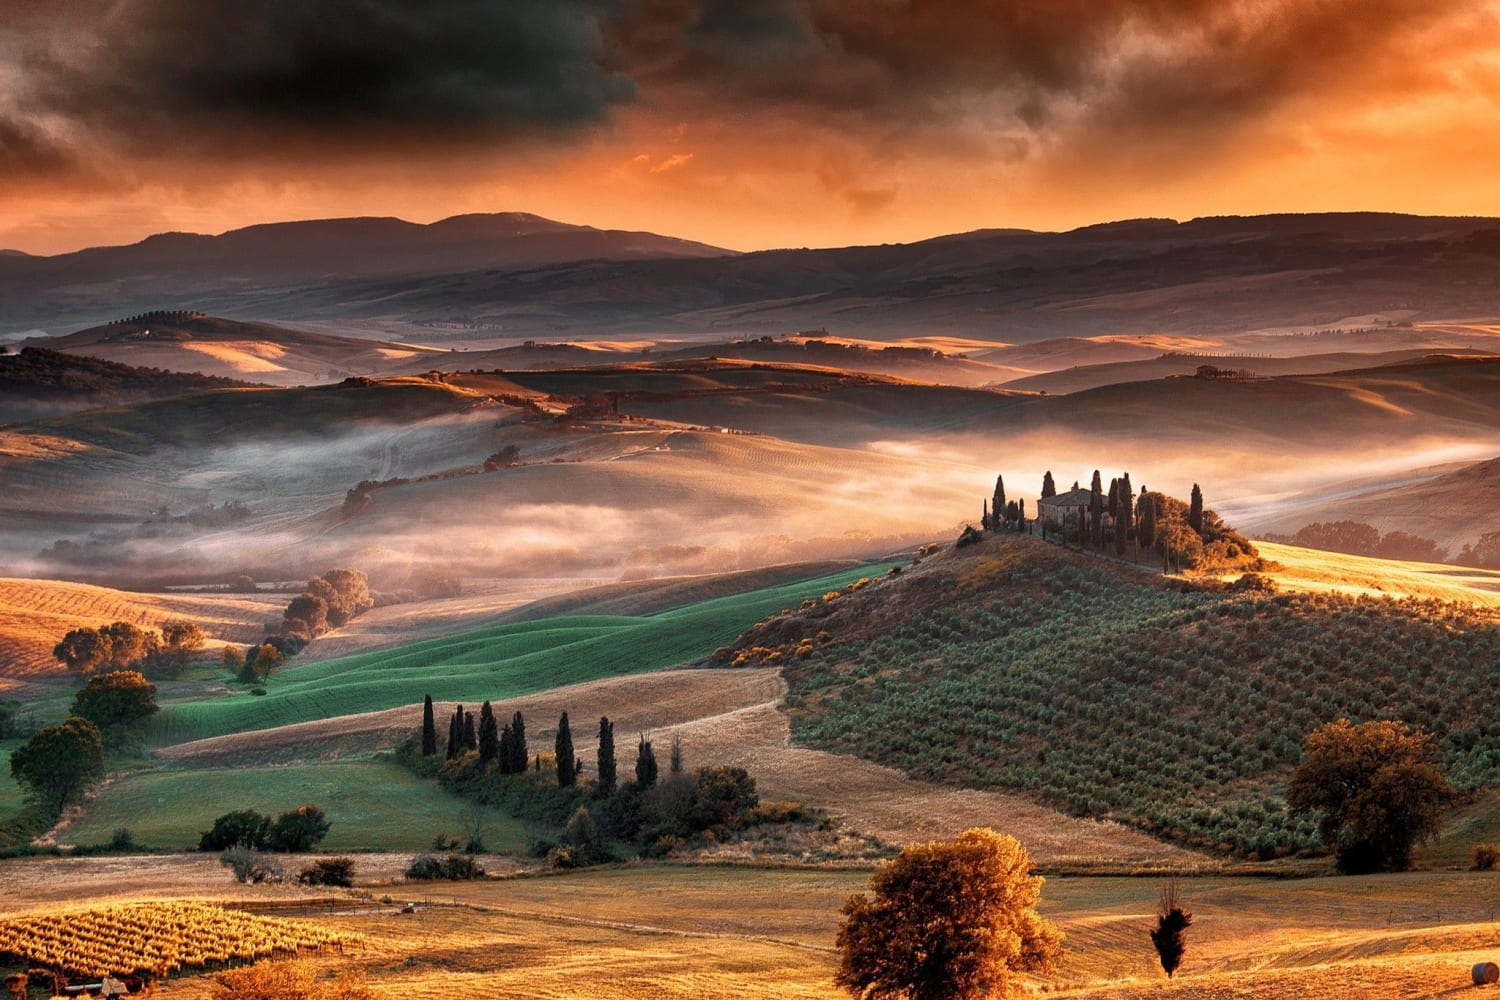 Tuscany, Italy (Photo credit to Hugo Allessandro)